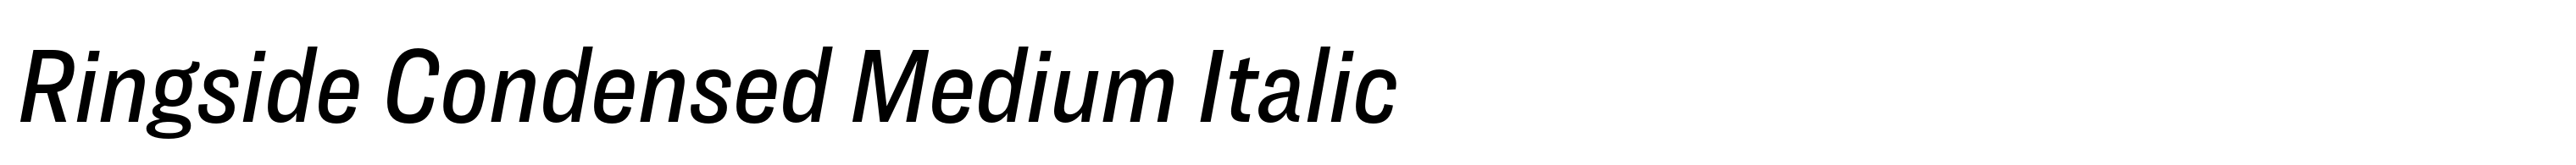 Ringside Condensed Medium Italic